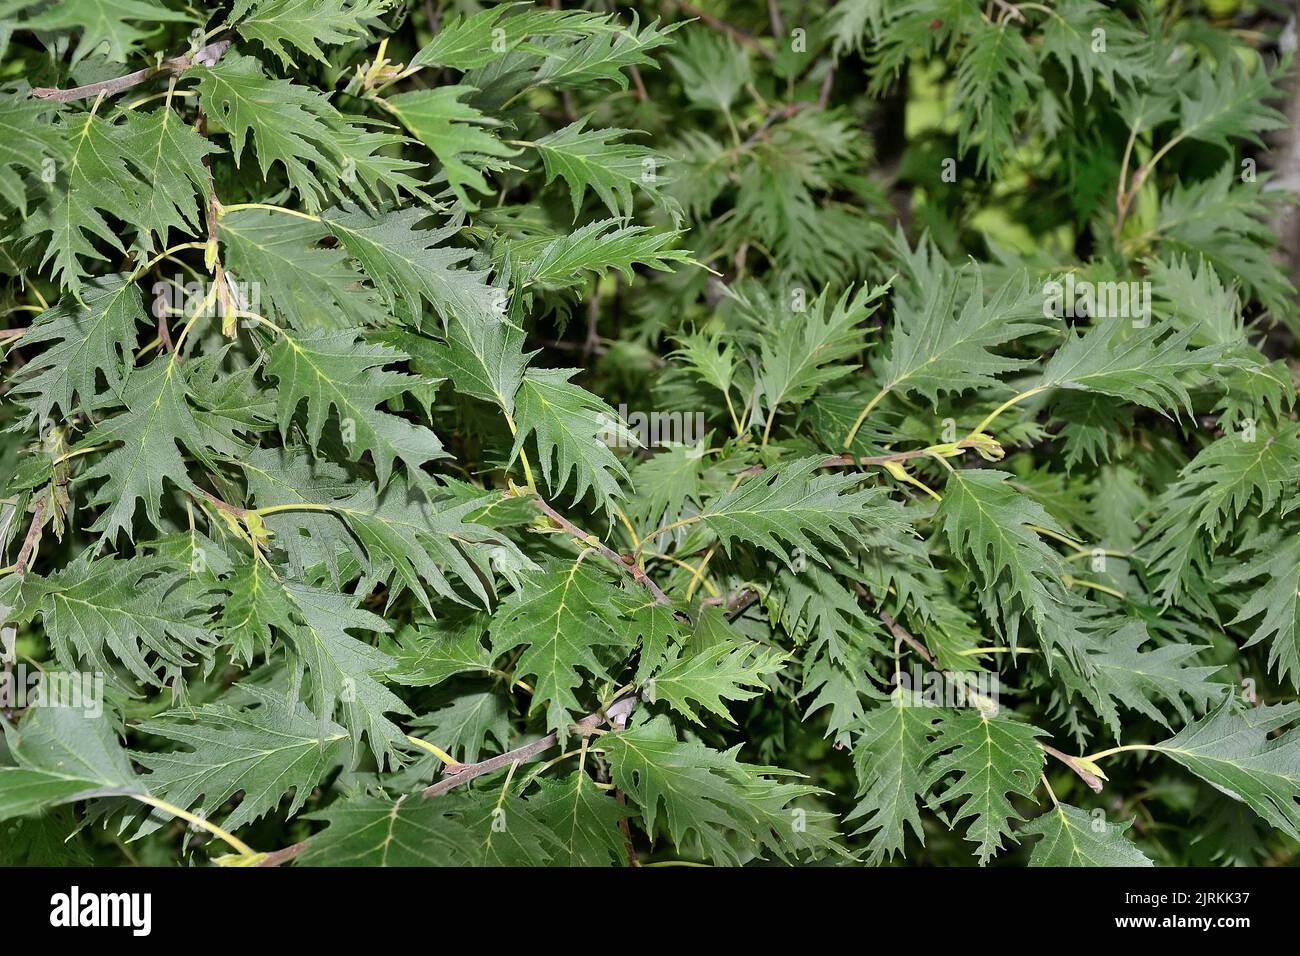 Graue Erle oder Alnus incana 'Laciniata' - Zweige seltener Pflanze mit dunkelgrün geschnitzten gezackten Blättern aus nächster Nähe - natürlicher Sommer-Botanik-Hintergrund. Se Stockfoto